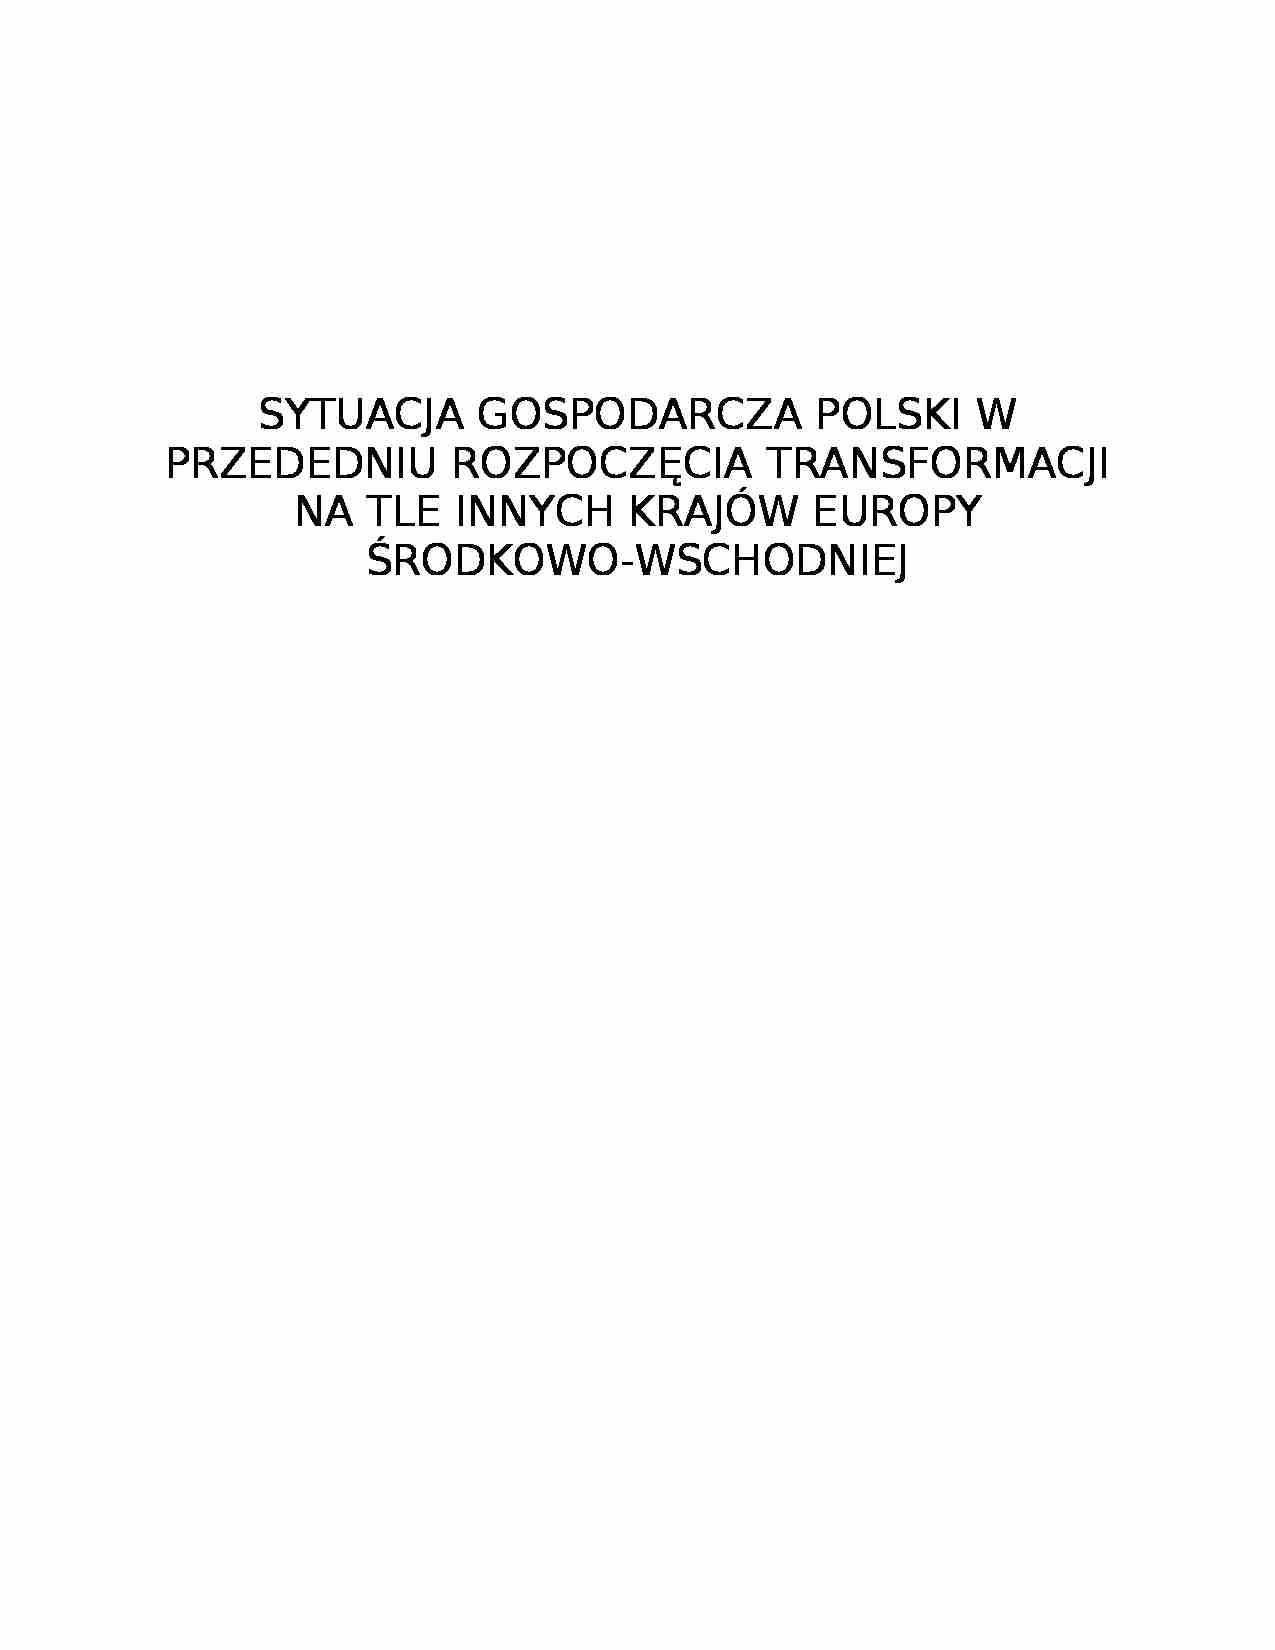 Sytuacja gospodarcza Polski przed transformacją - strona 1